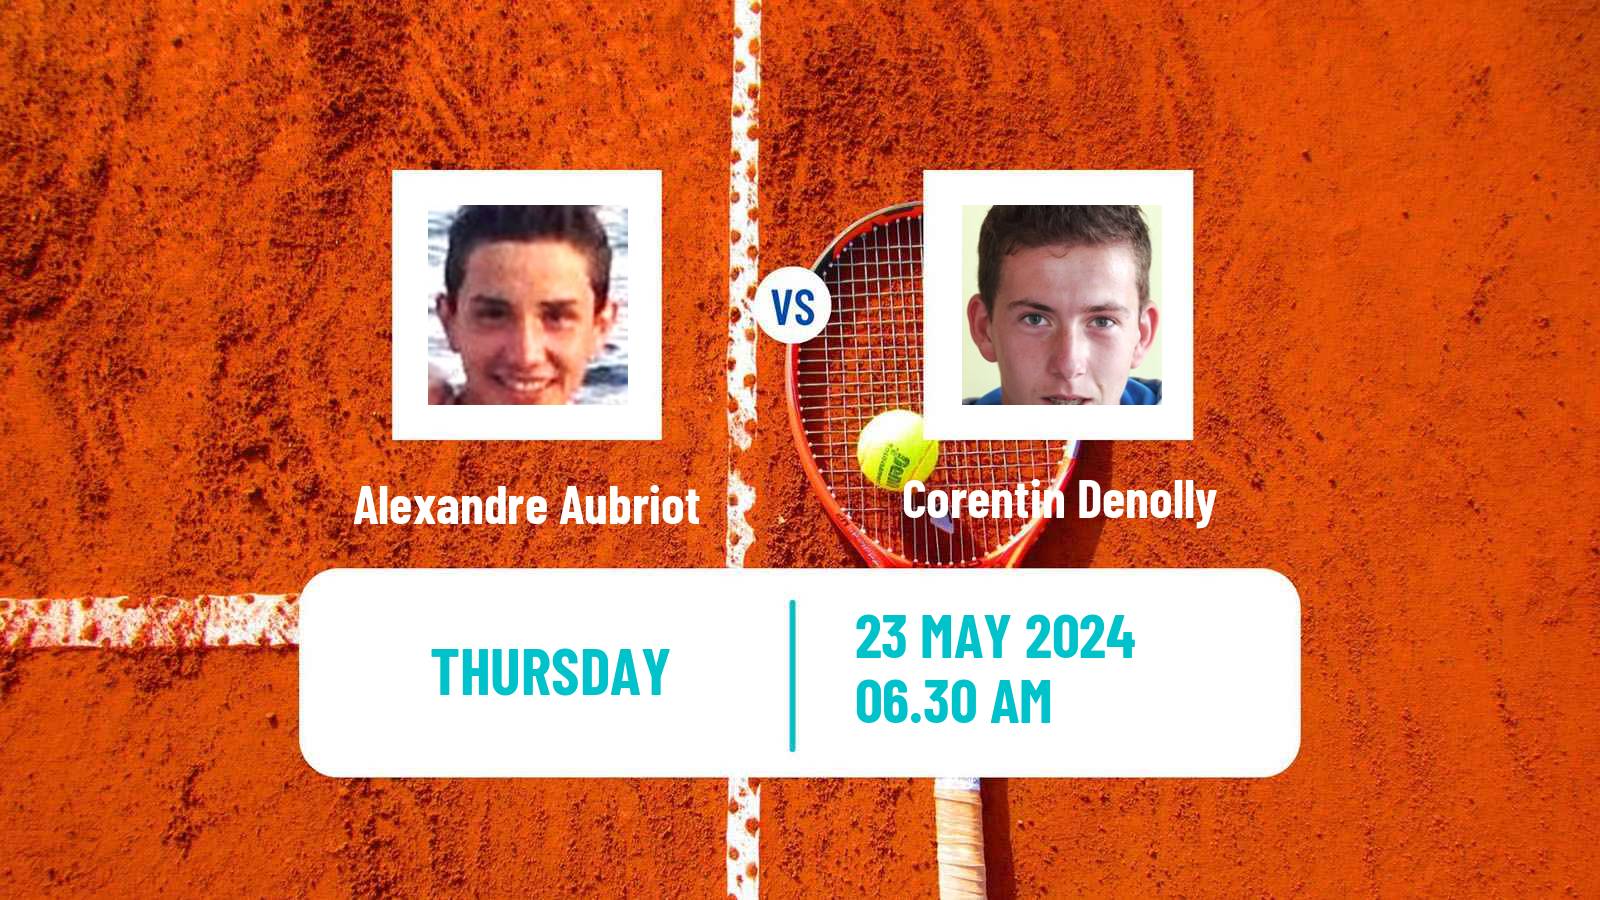 Tennis ITF M25 Deauville Men Alexandre Aubriot - Corentin Denolly